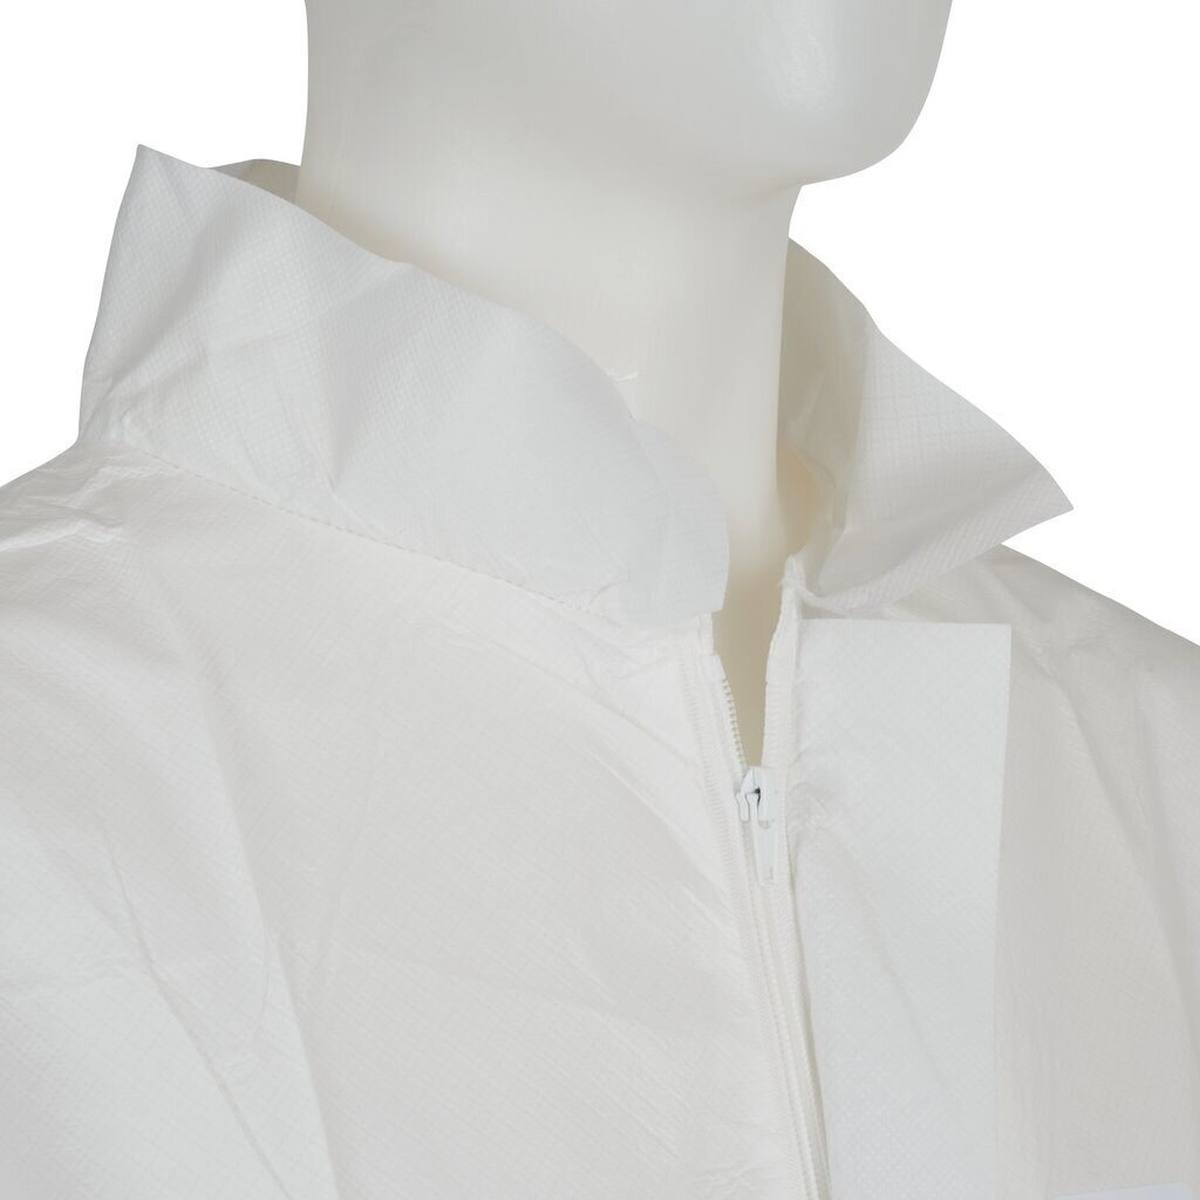 3M 4440 Manteau, blanc, taille 2XL, particulièrement respirant, très léger, avec fermeture éclair, poignets tricotés